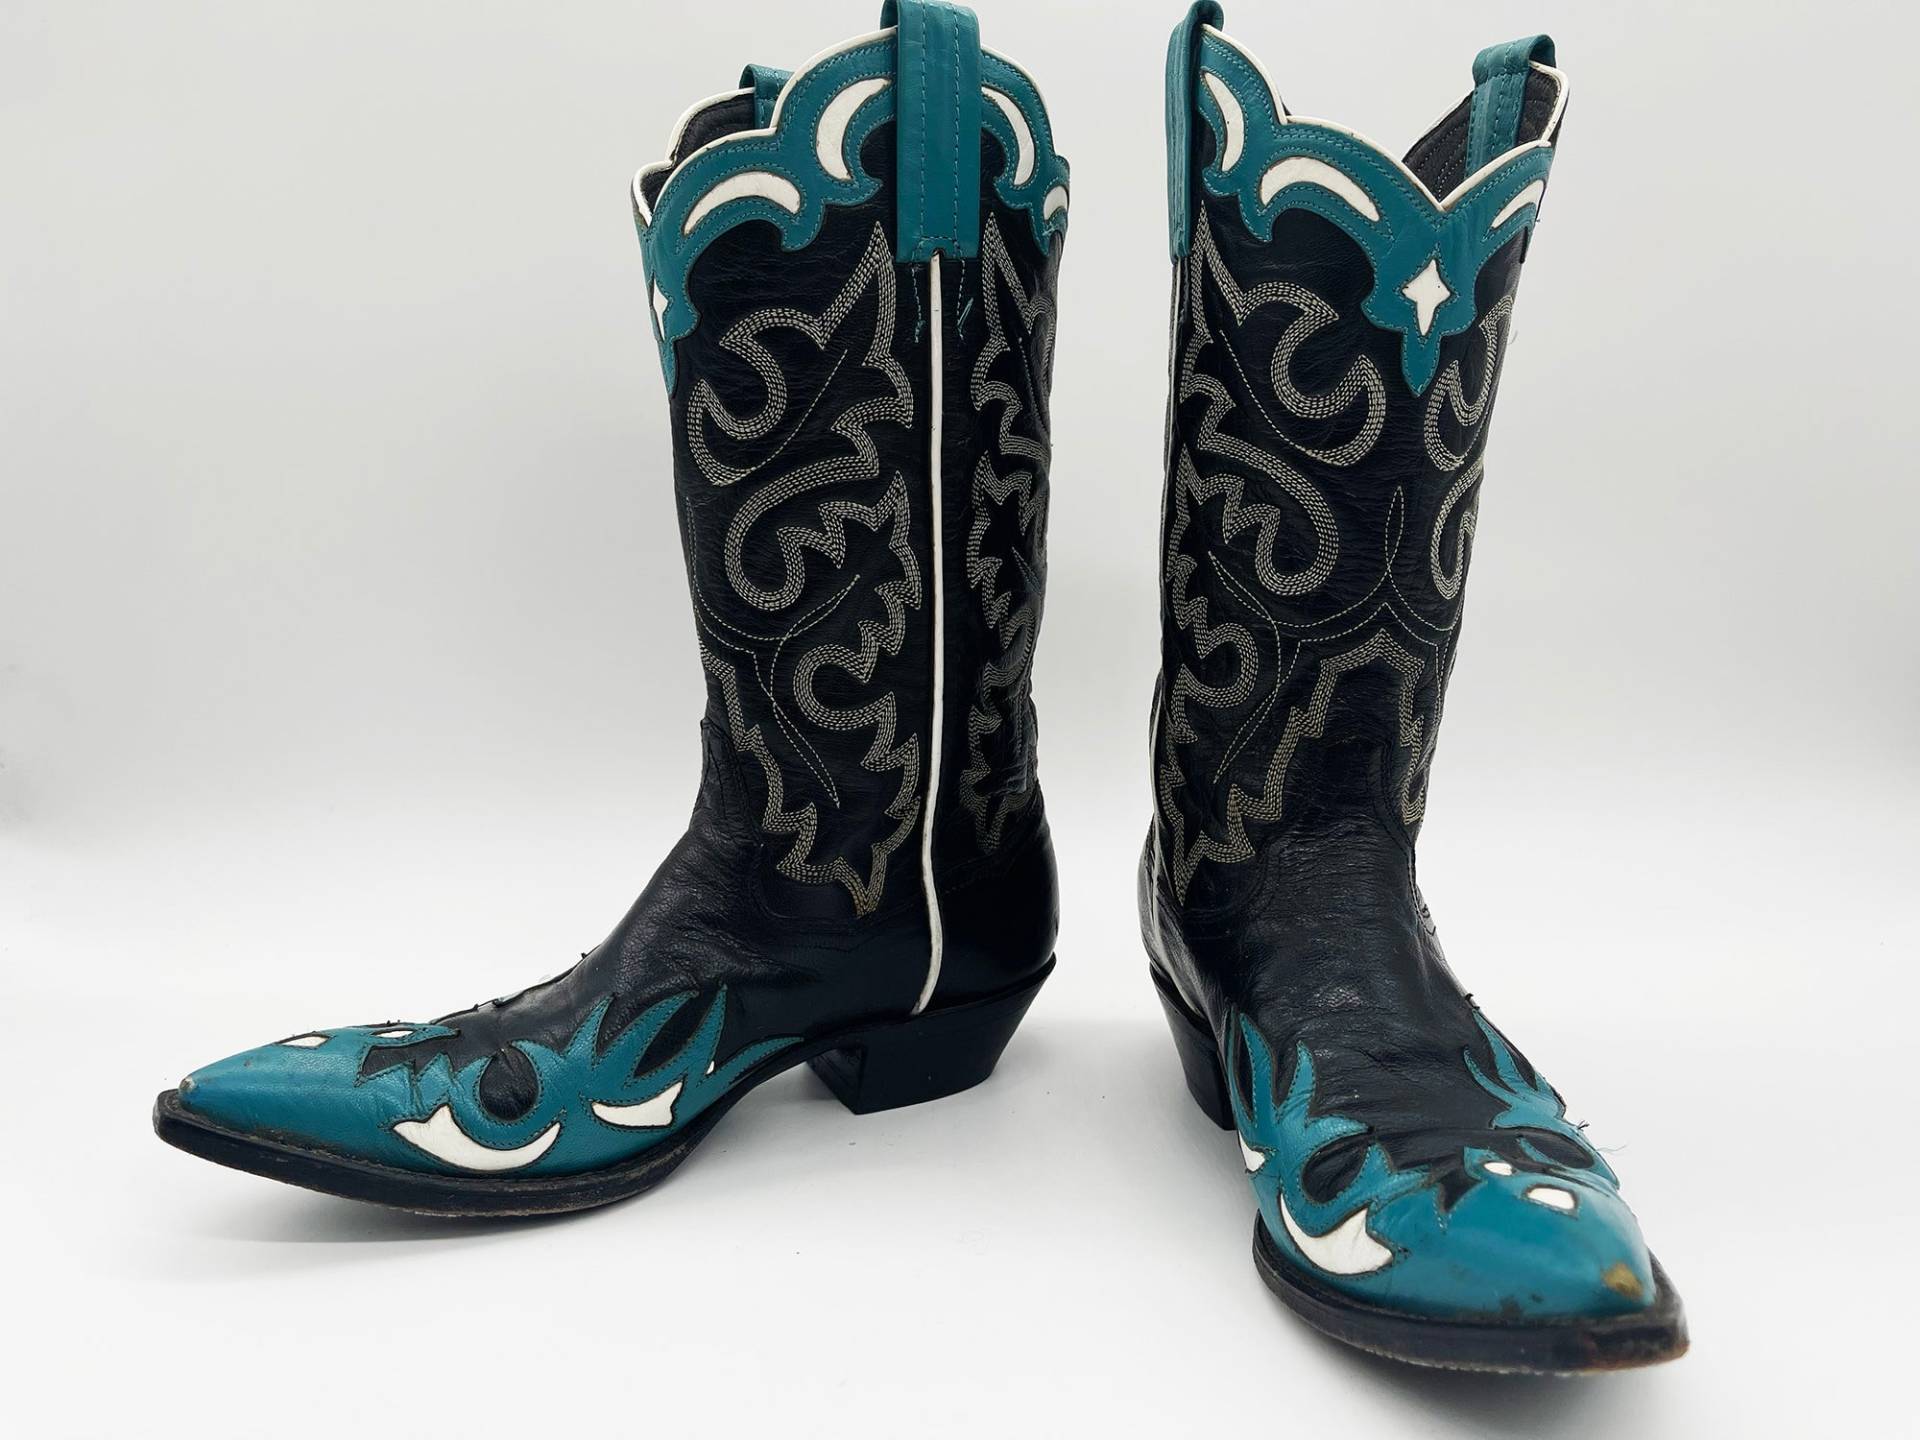 Vintage 1950S Panhandle Schmale Cowboy Stiefel Aus Leder in Schwarz-Teal // Retro Southwestern Cowgirl 50S von TheStrangeFlavor